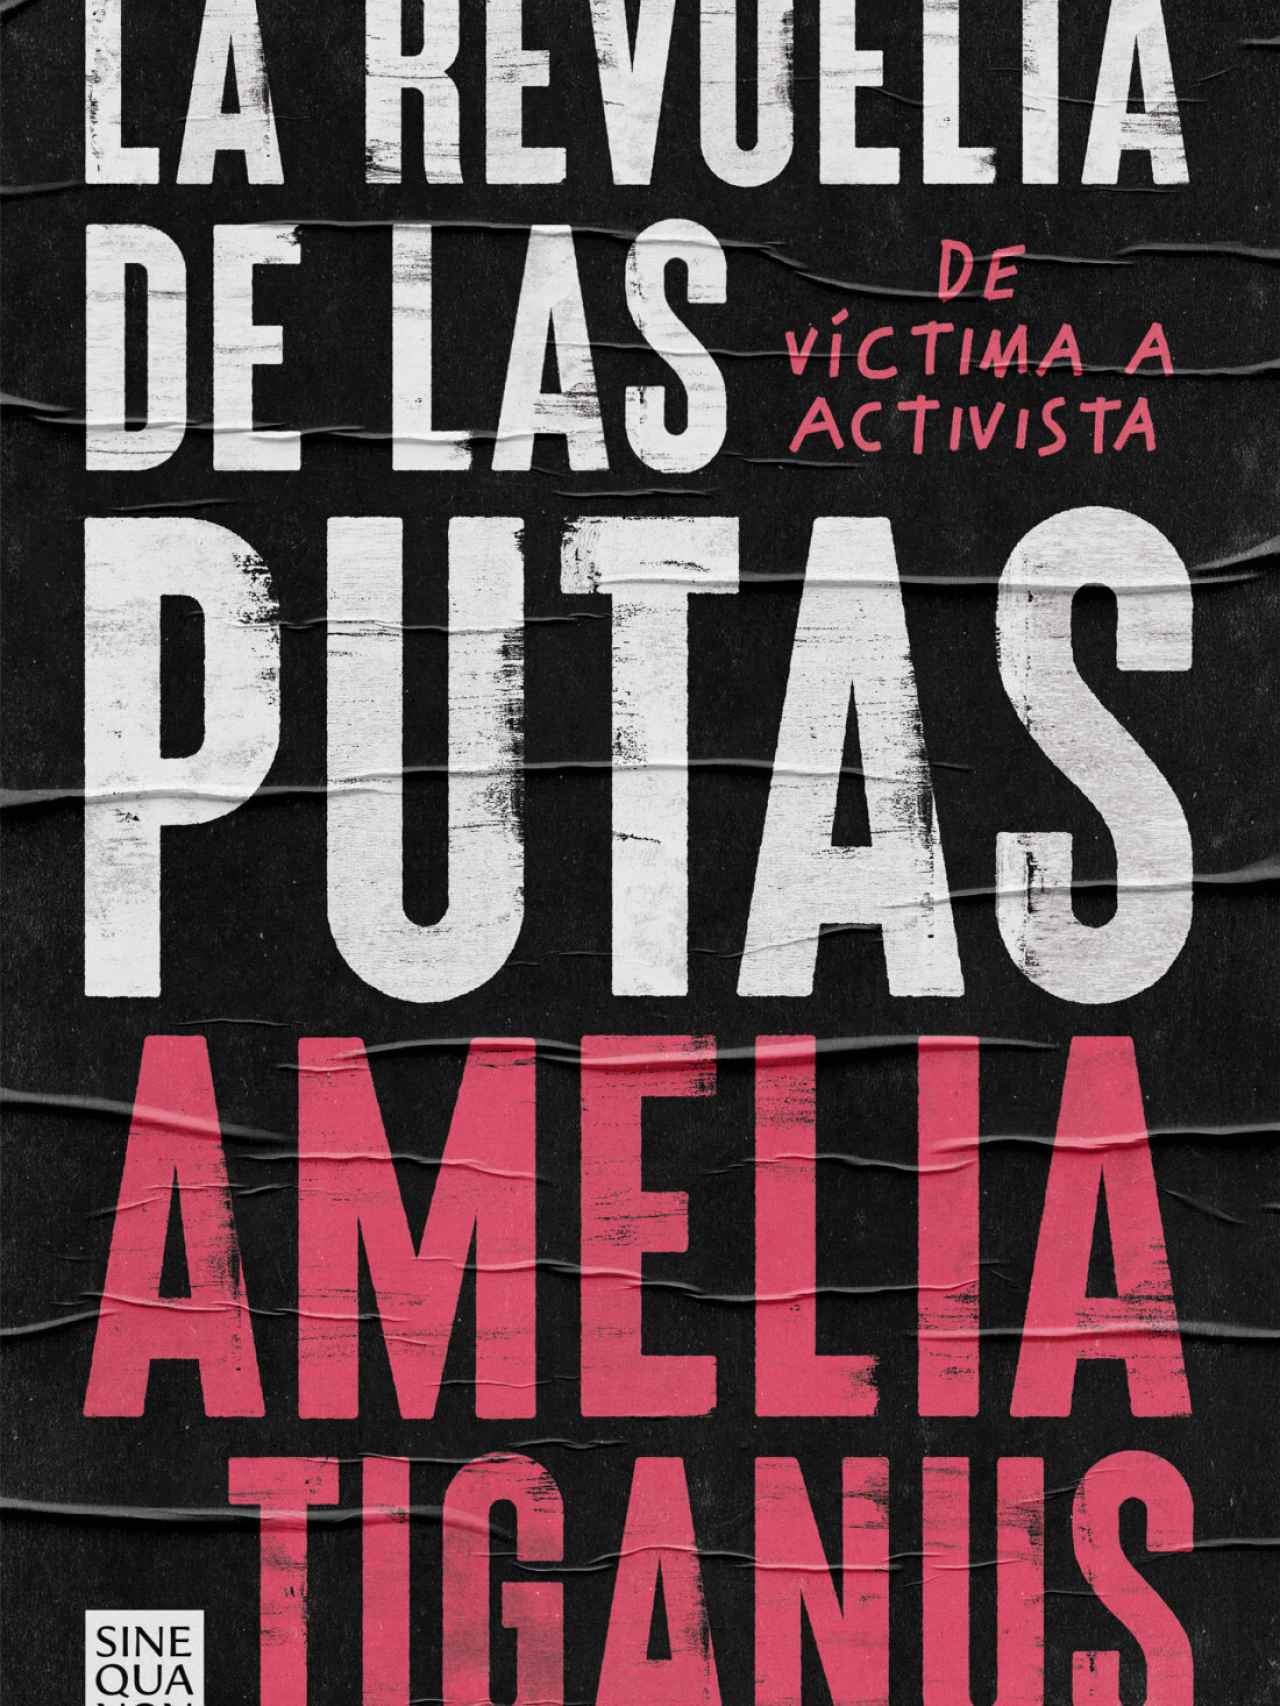 Portada del libro 'La revuelta de las putas. De víctima a activista', de Amelia Tiganus.